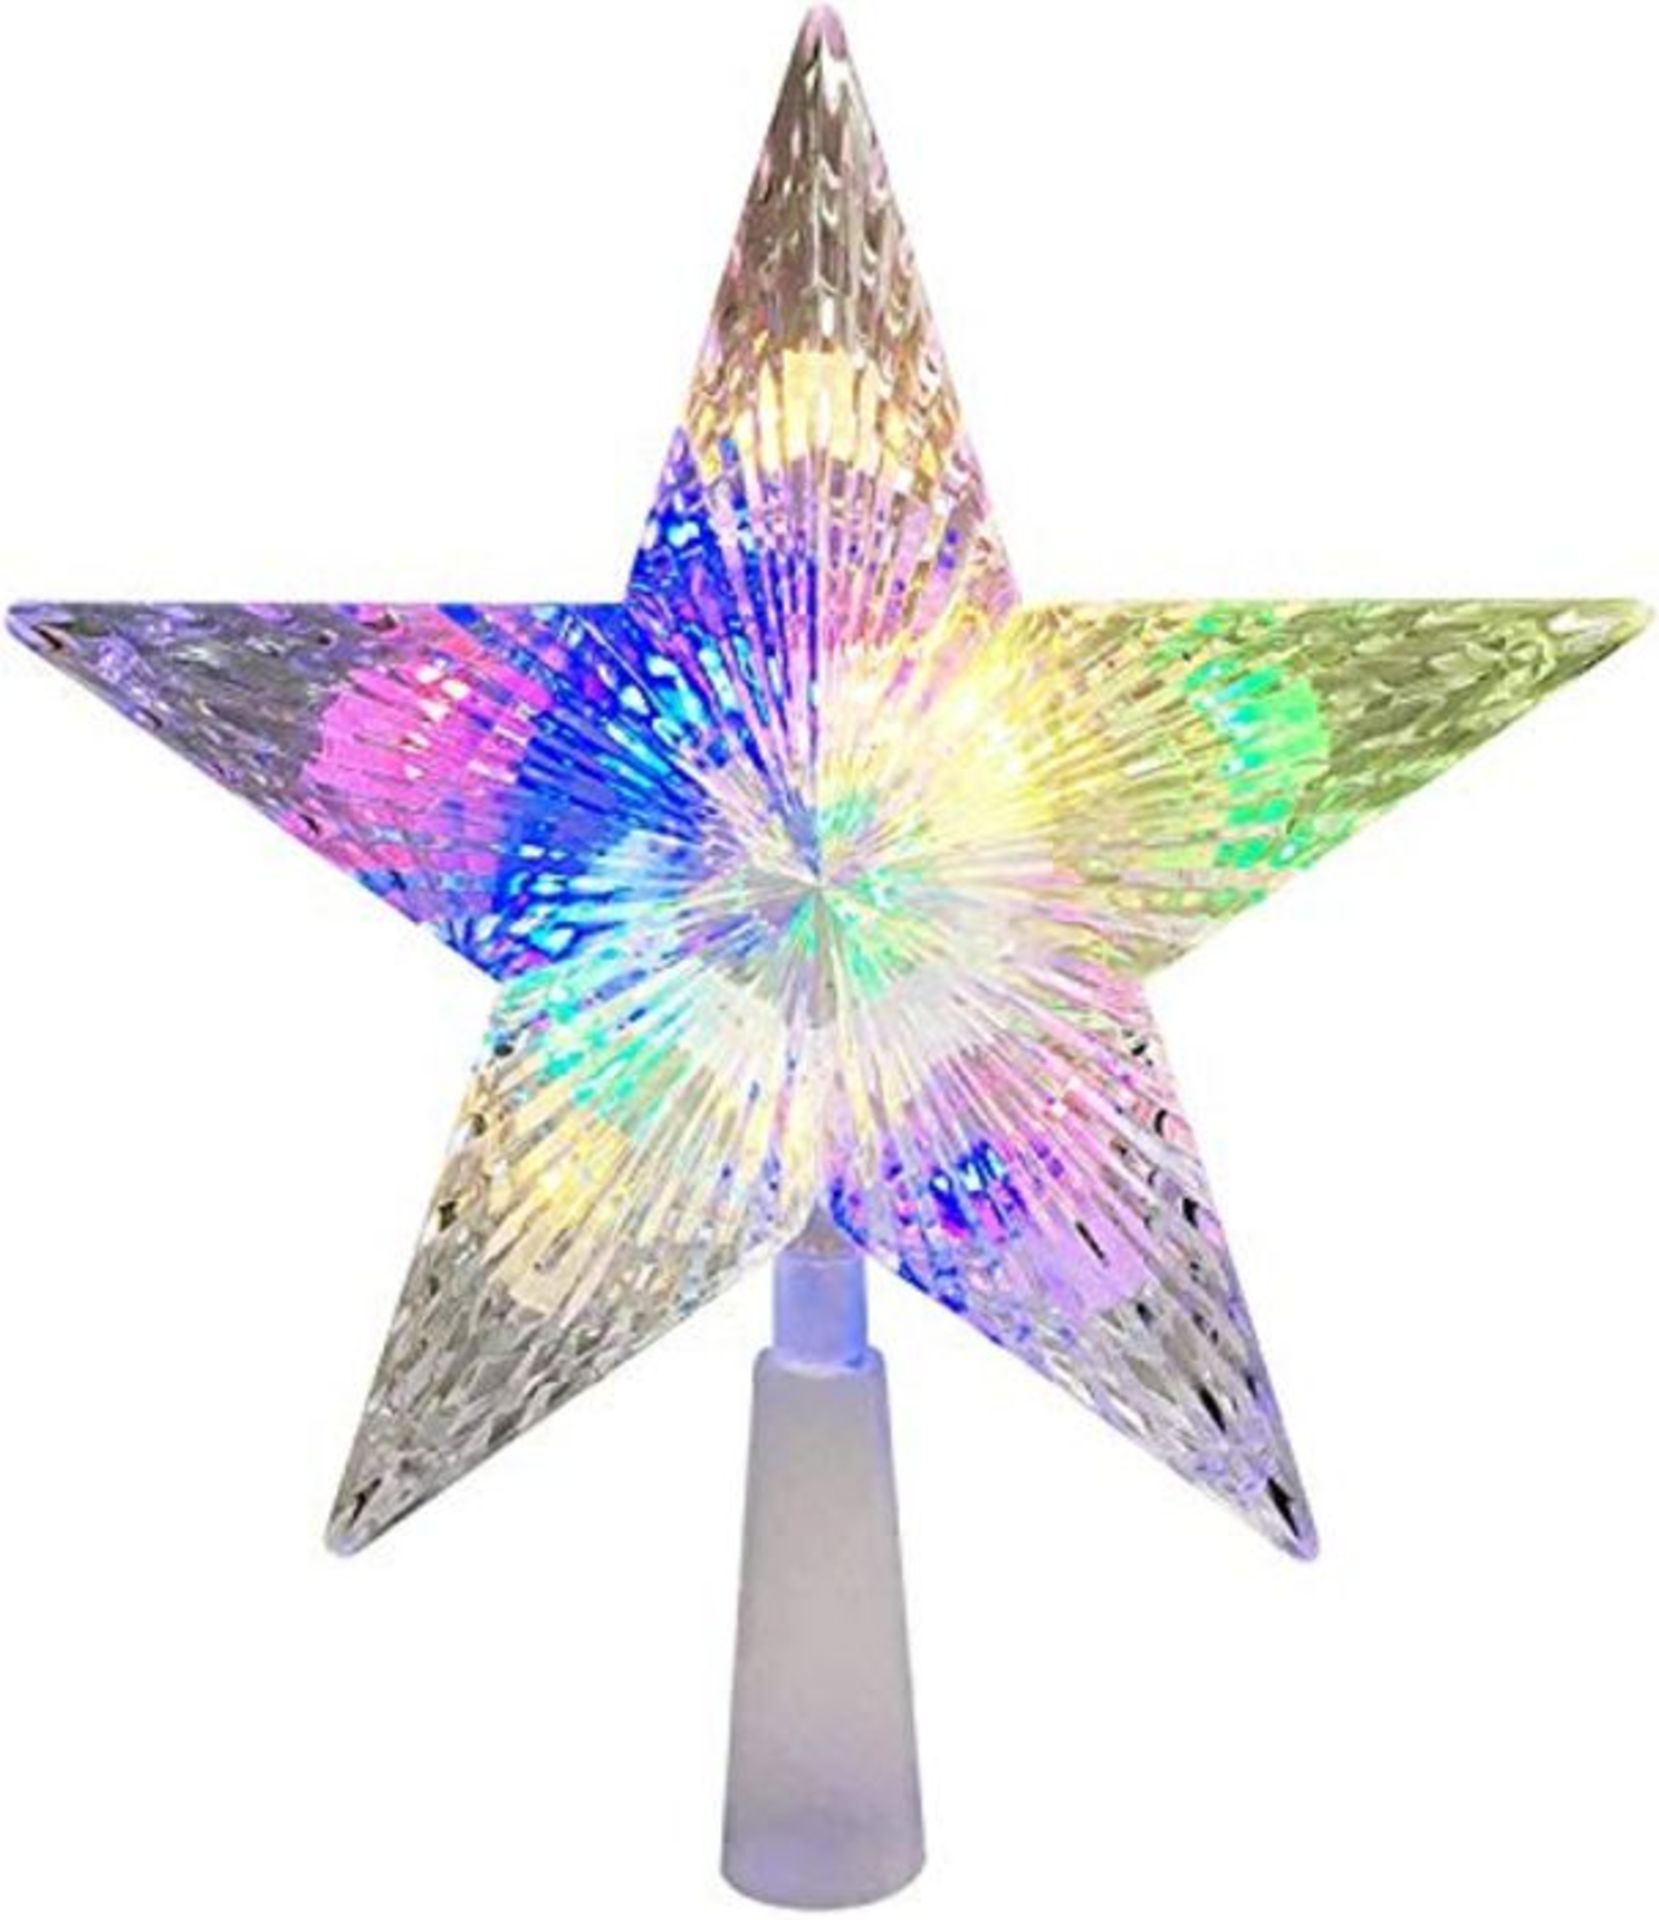 [BROKEN] Monkey Home LED Star Christmas Tree Topper 9.5 Inch 24 Colours Flash Star Lig